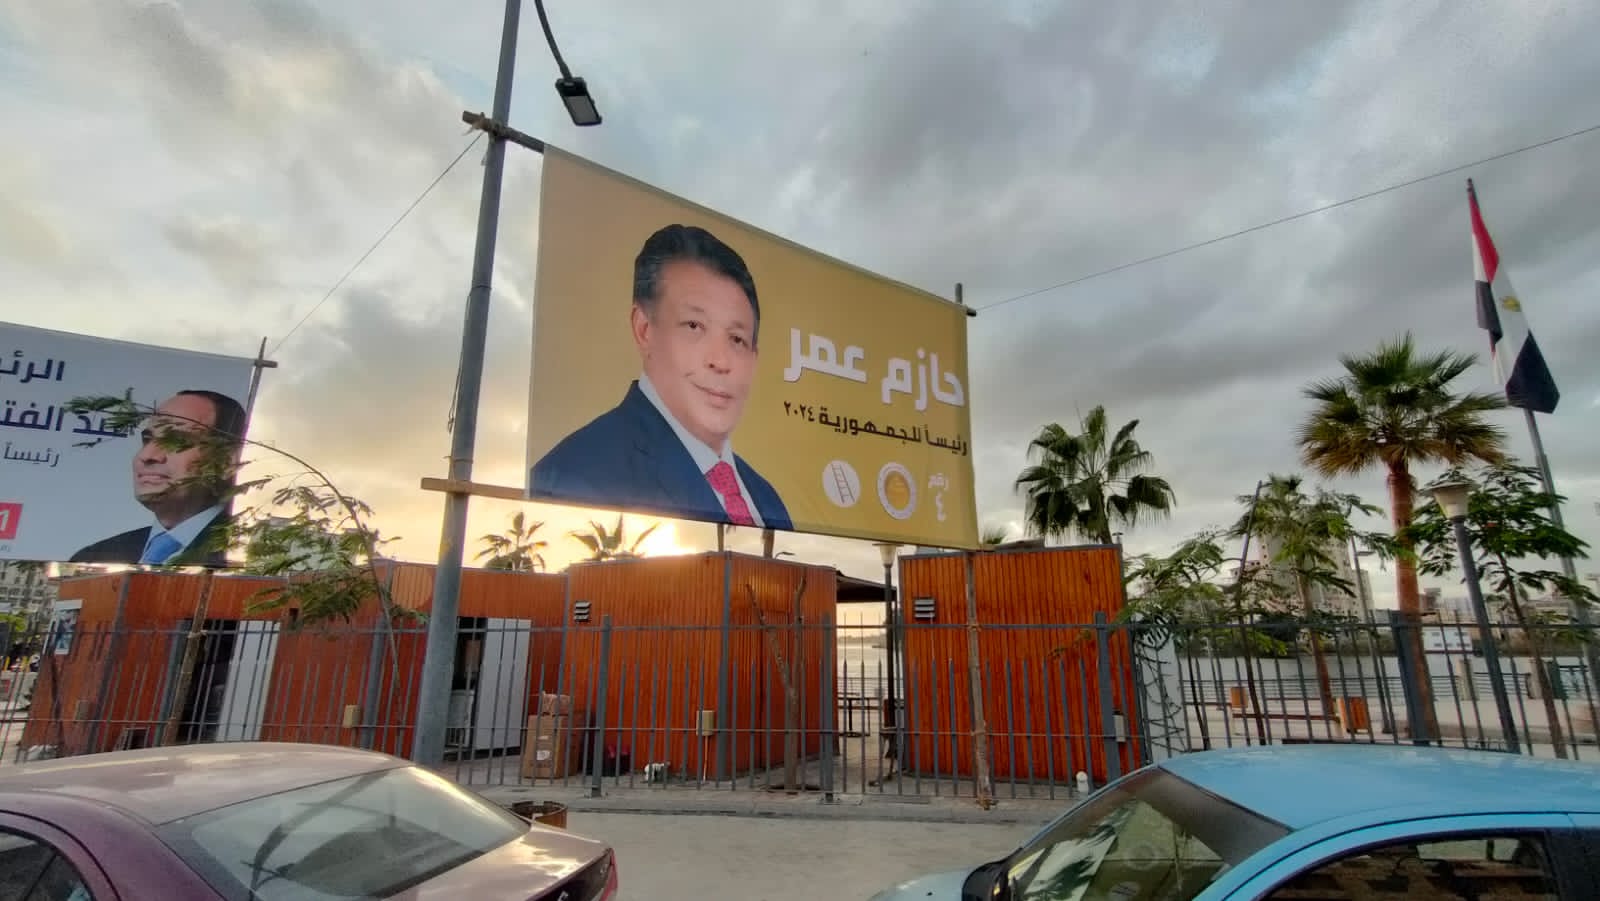 صور المرشح الرئاسي حازم عمر (12)